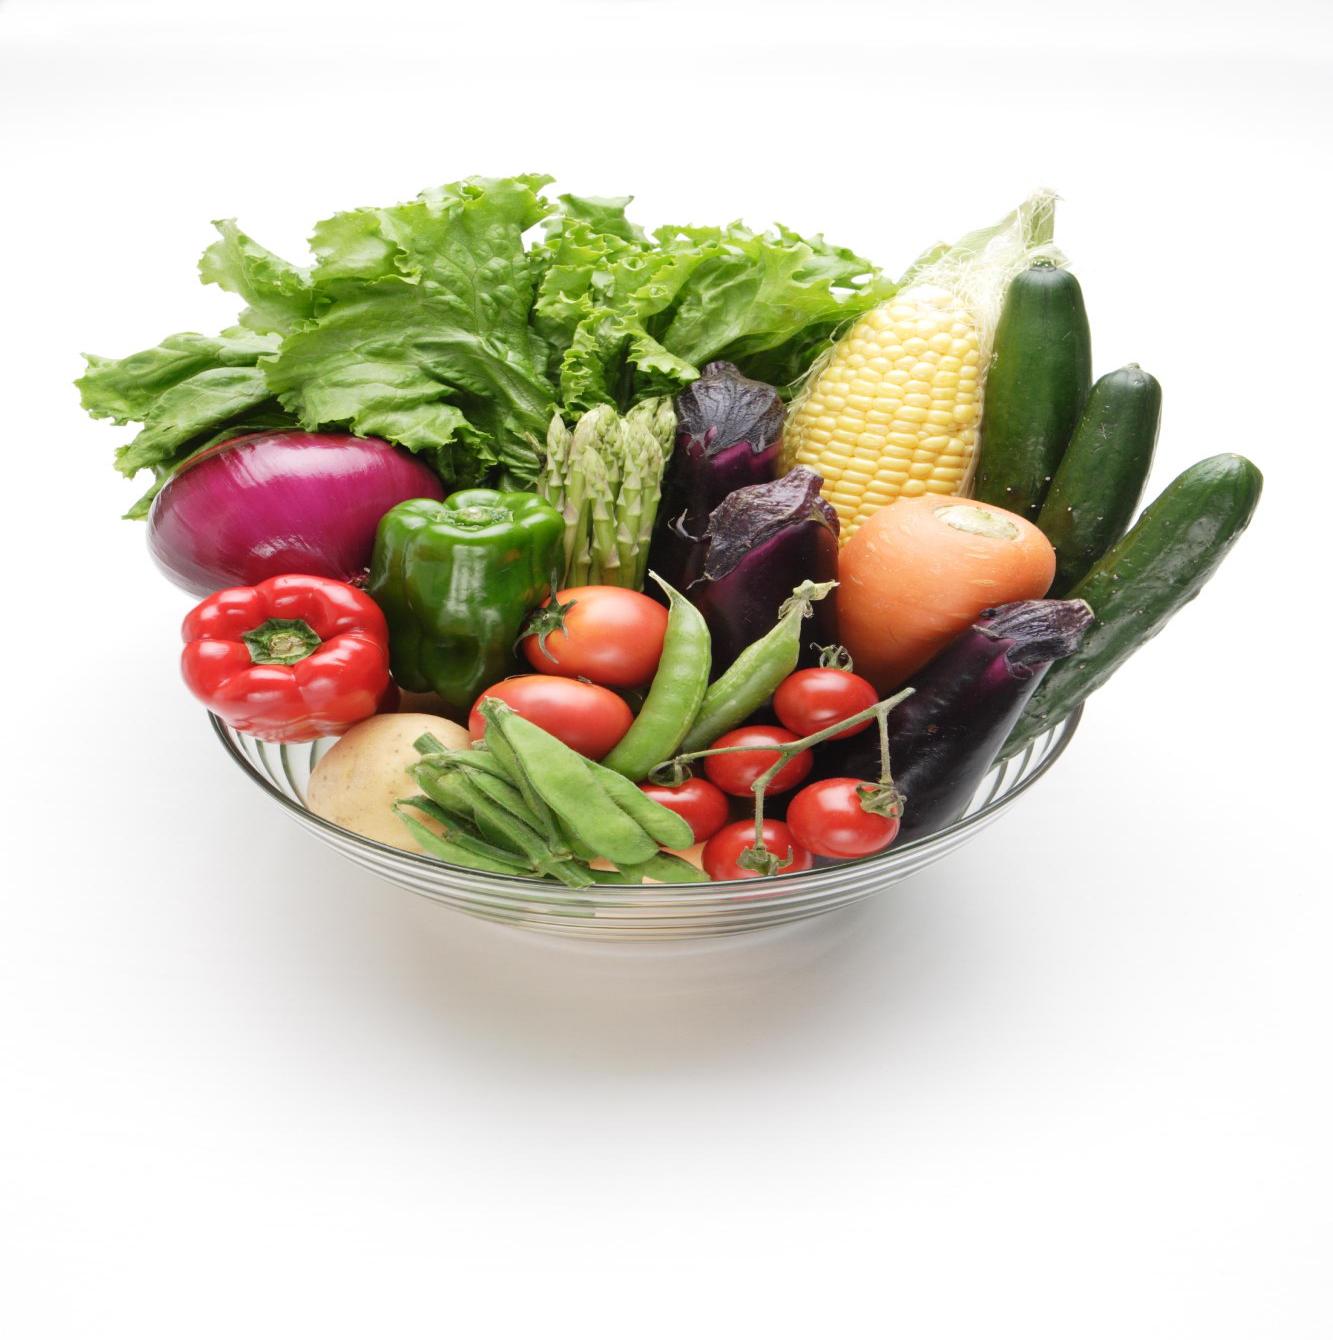 農産物品評会のイメージ。色とりどりの野菜の写真です。